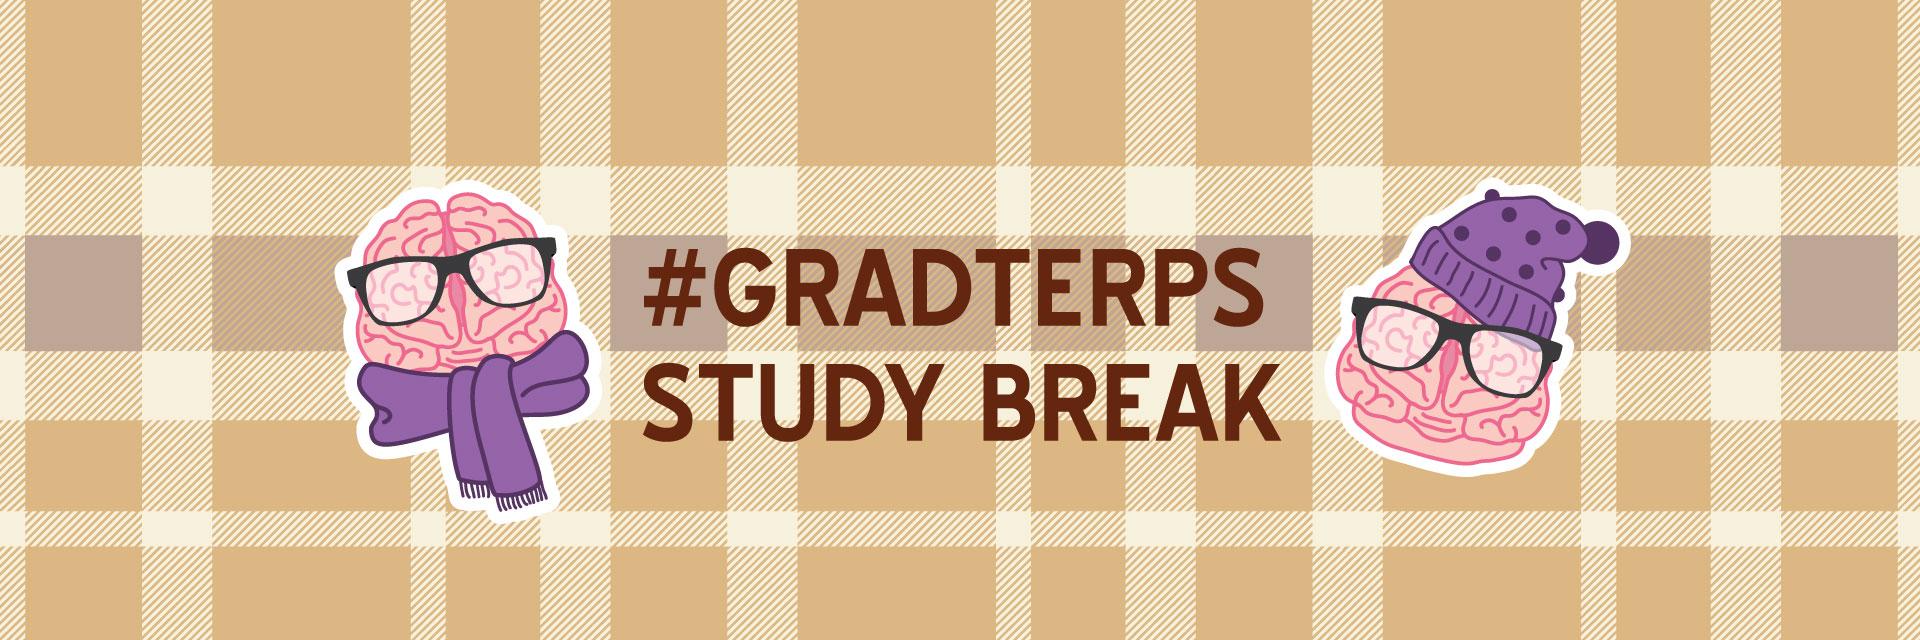 GradTerps Study Break